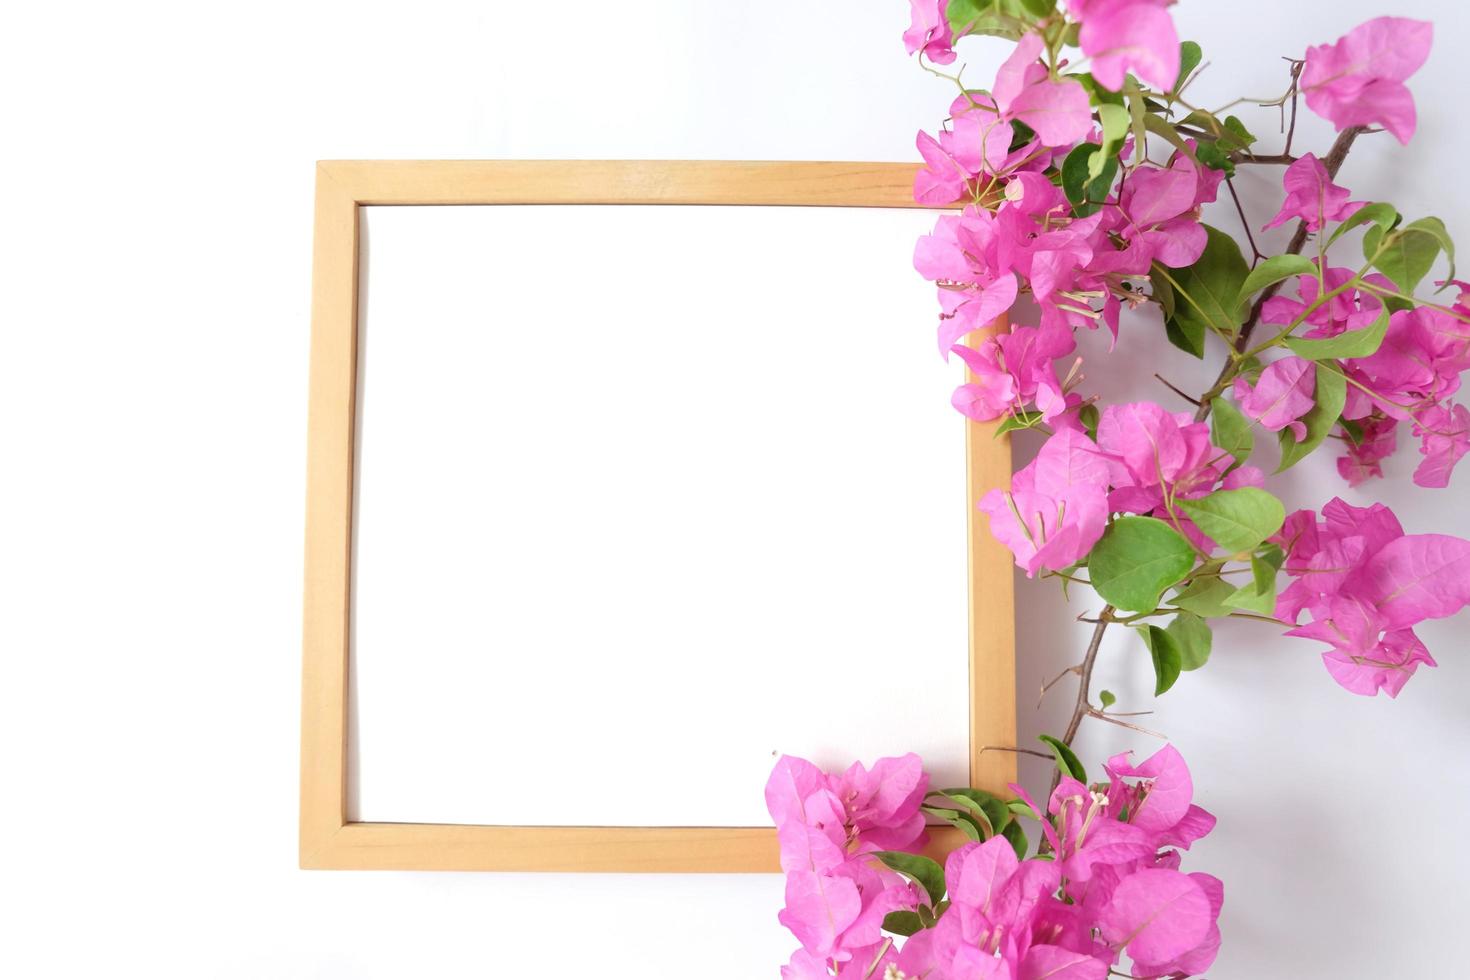 leerer Rahmen mit Pflanze auf weißem Hintergrund foto